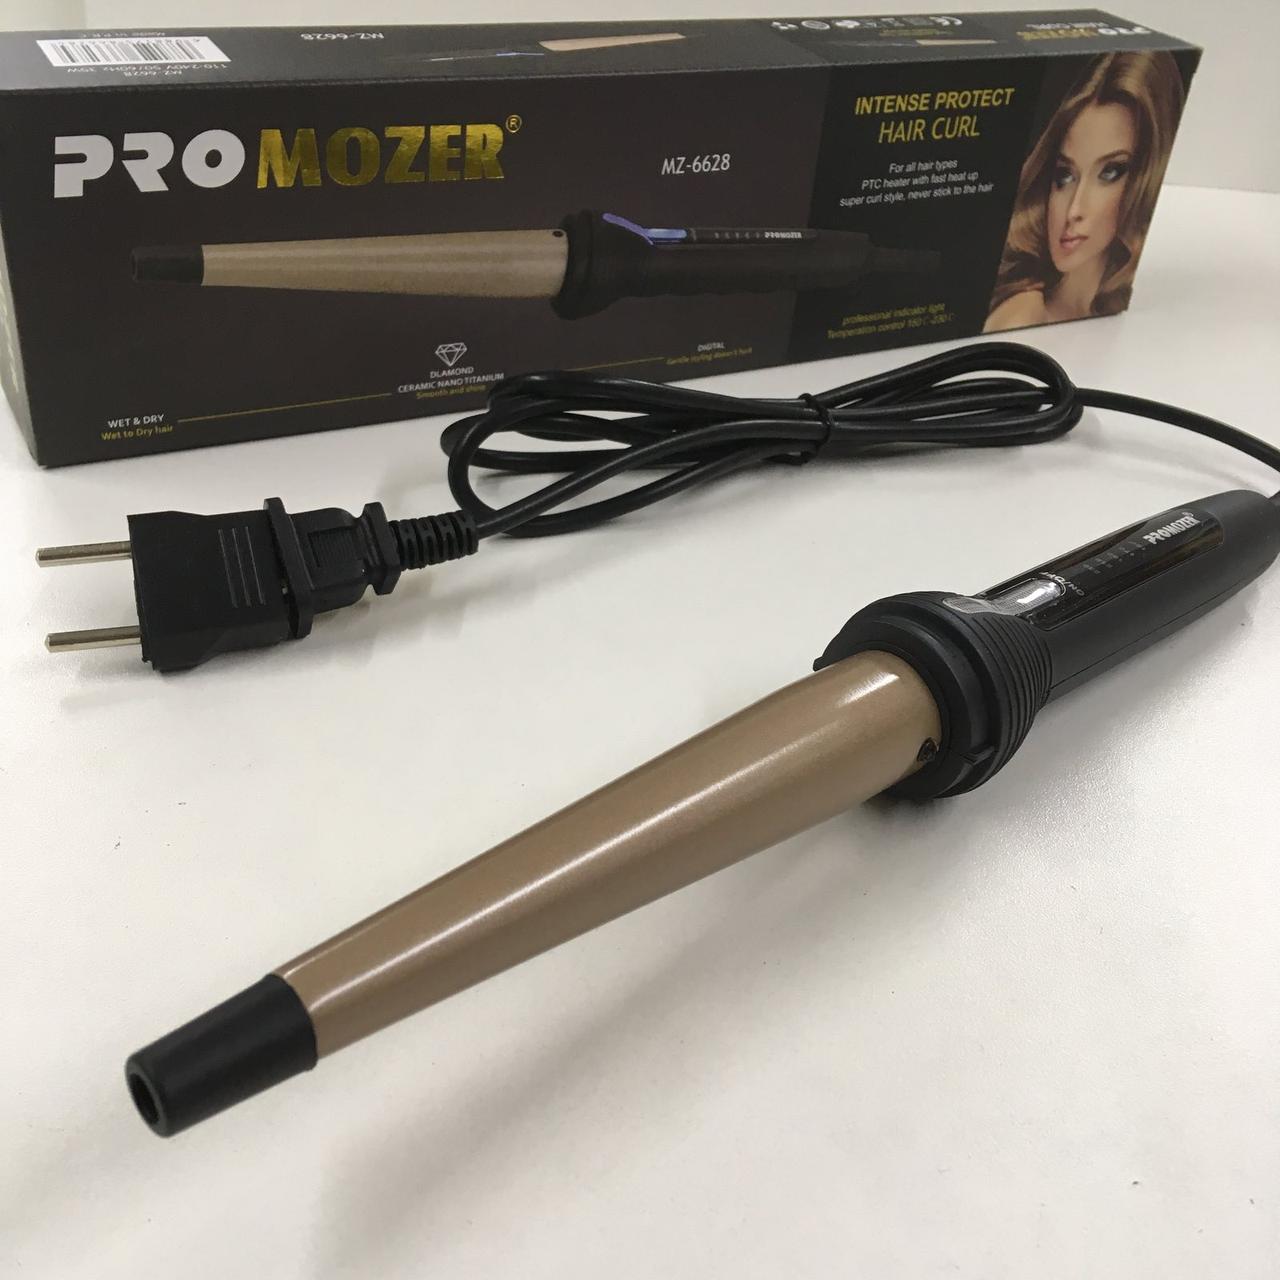 Конусная плойка для волос с индикатором температуры 150С-230С Pro Mozer MZ-6628 (70 шт/ящ)